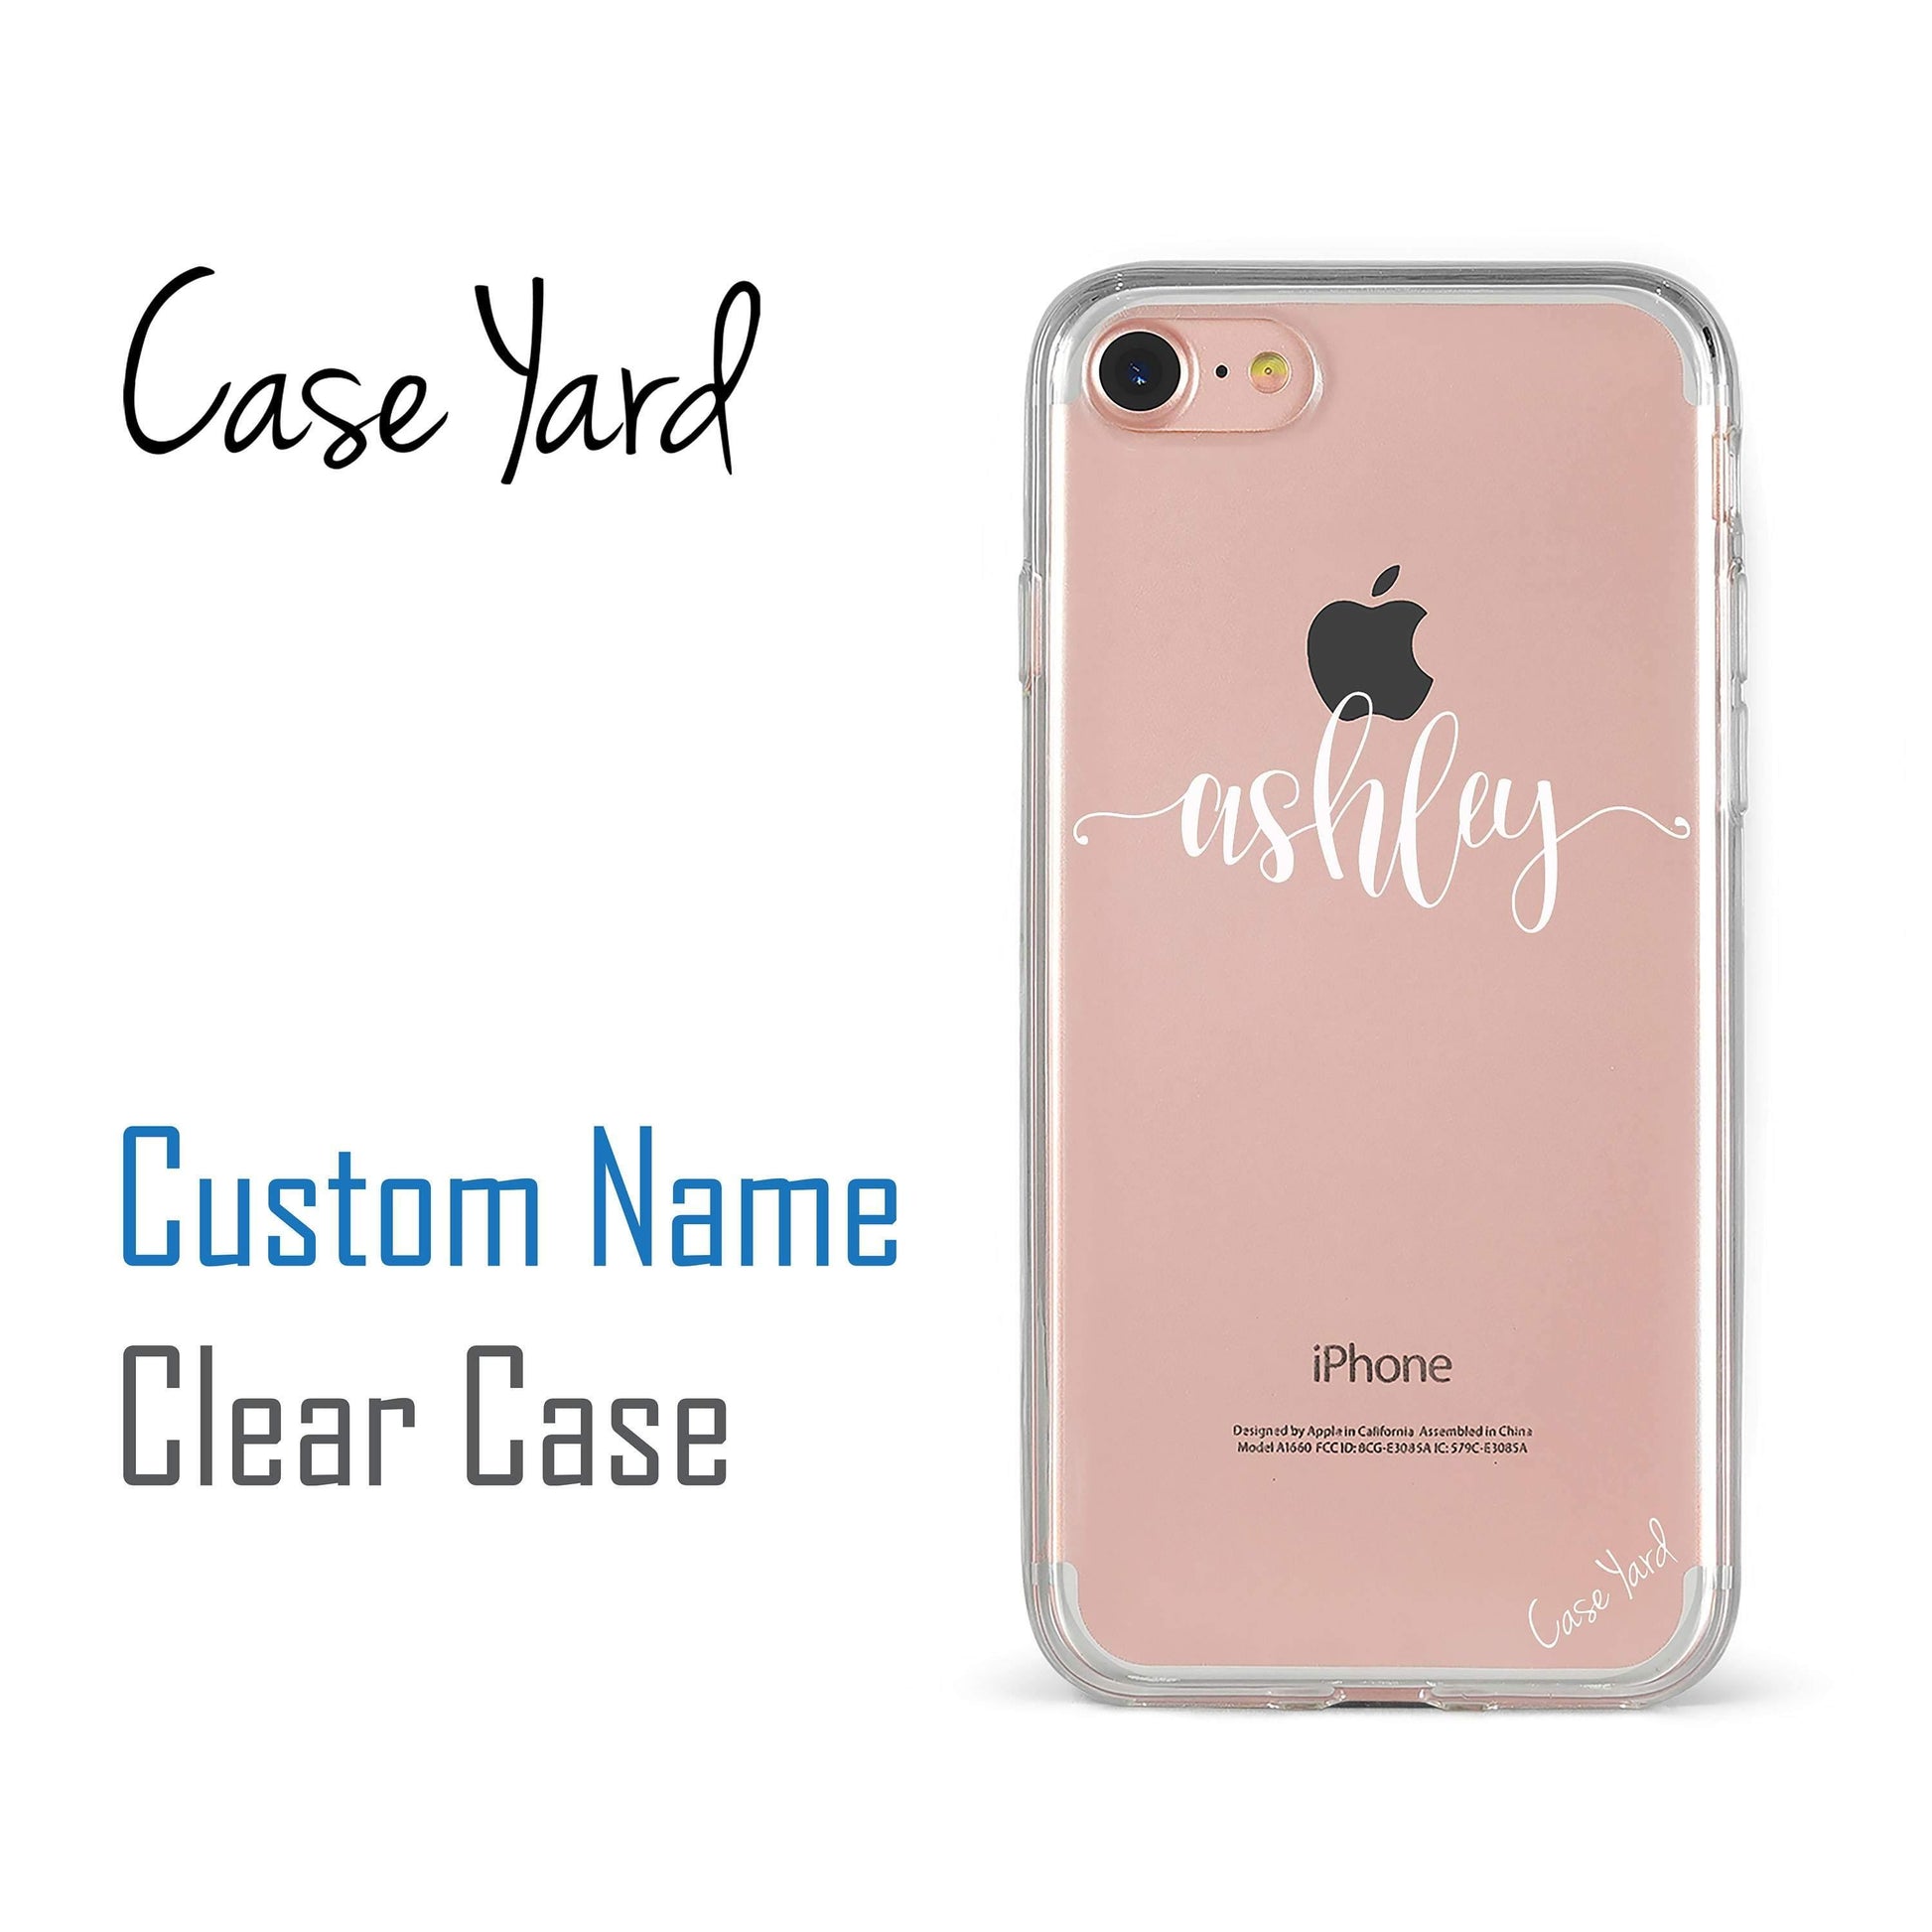 Custom A2 - Case Yard USA